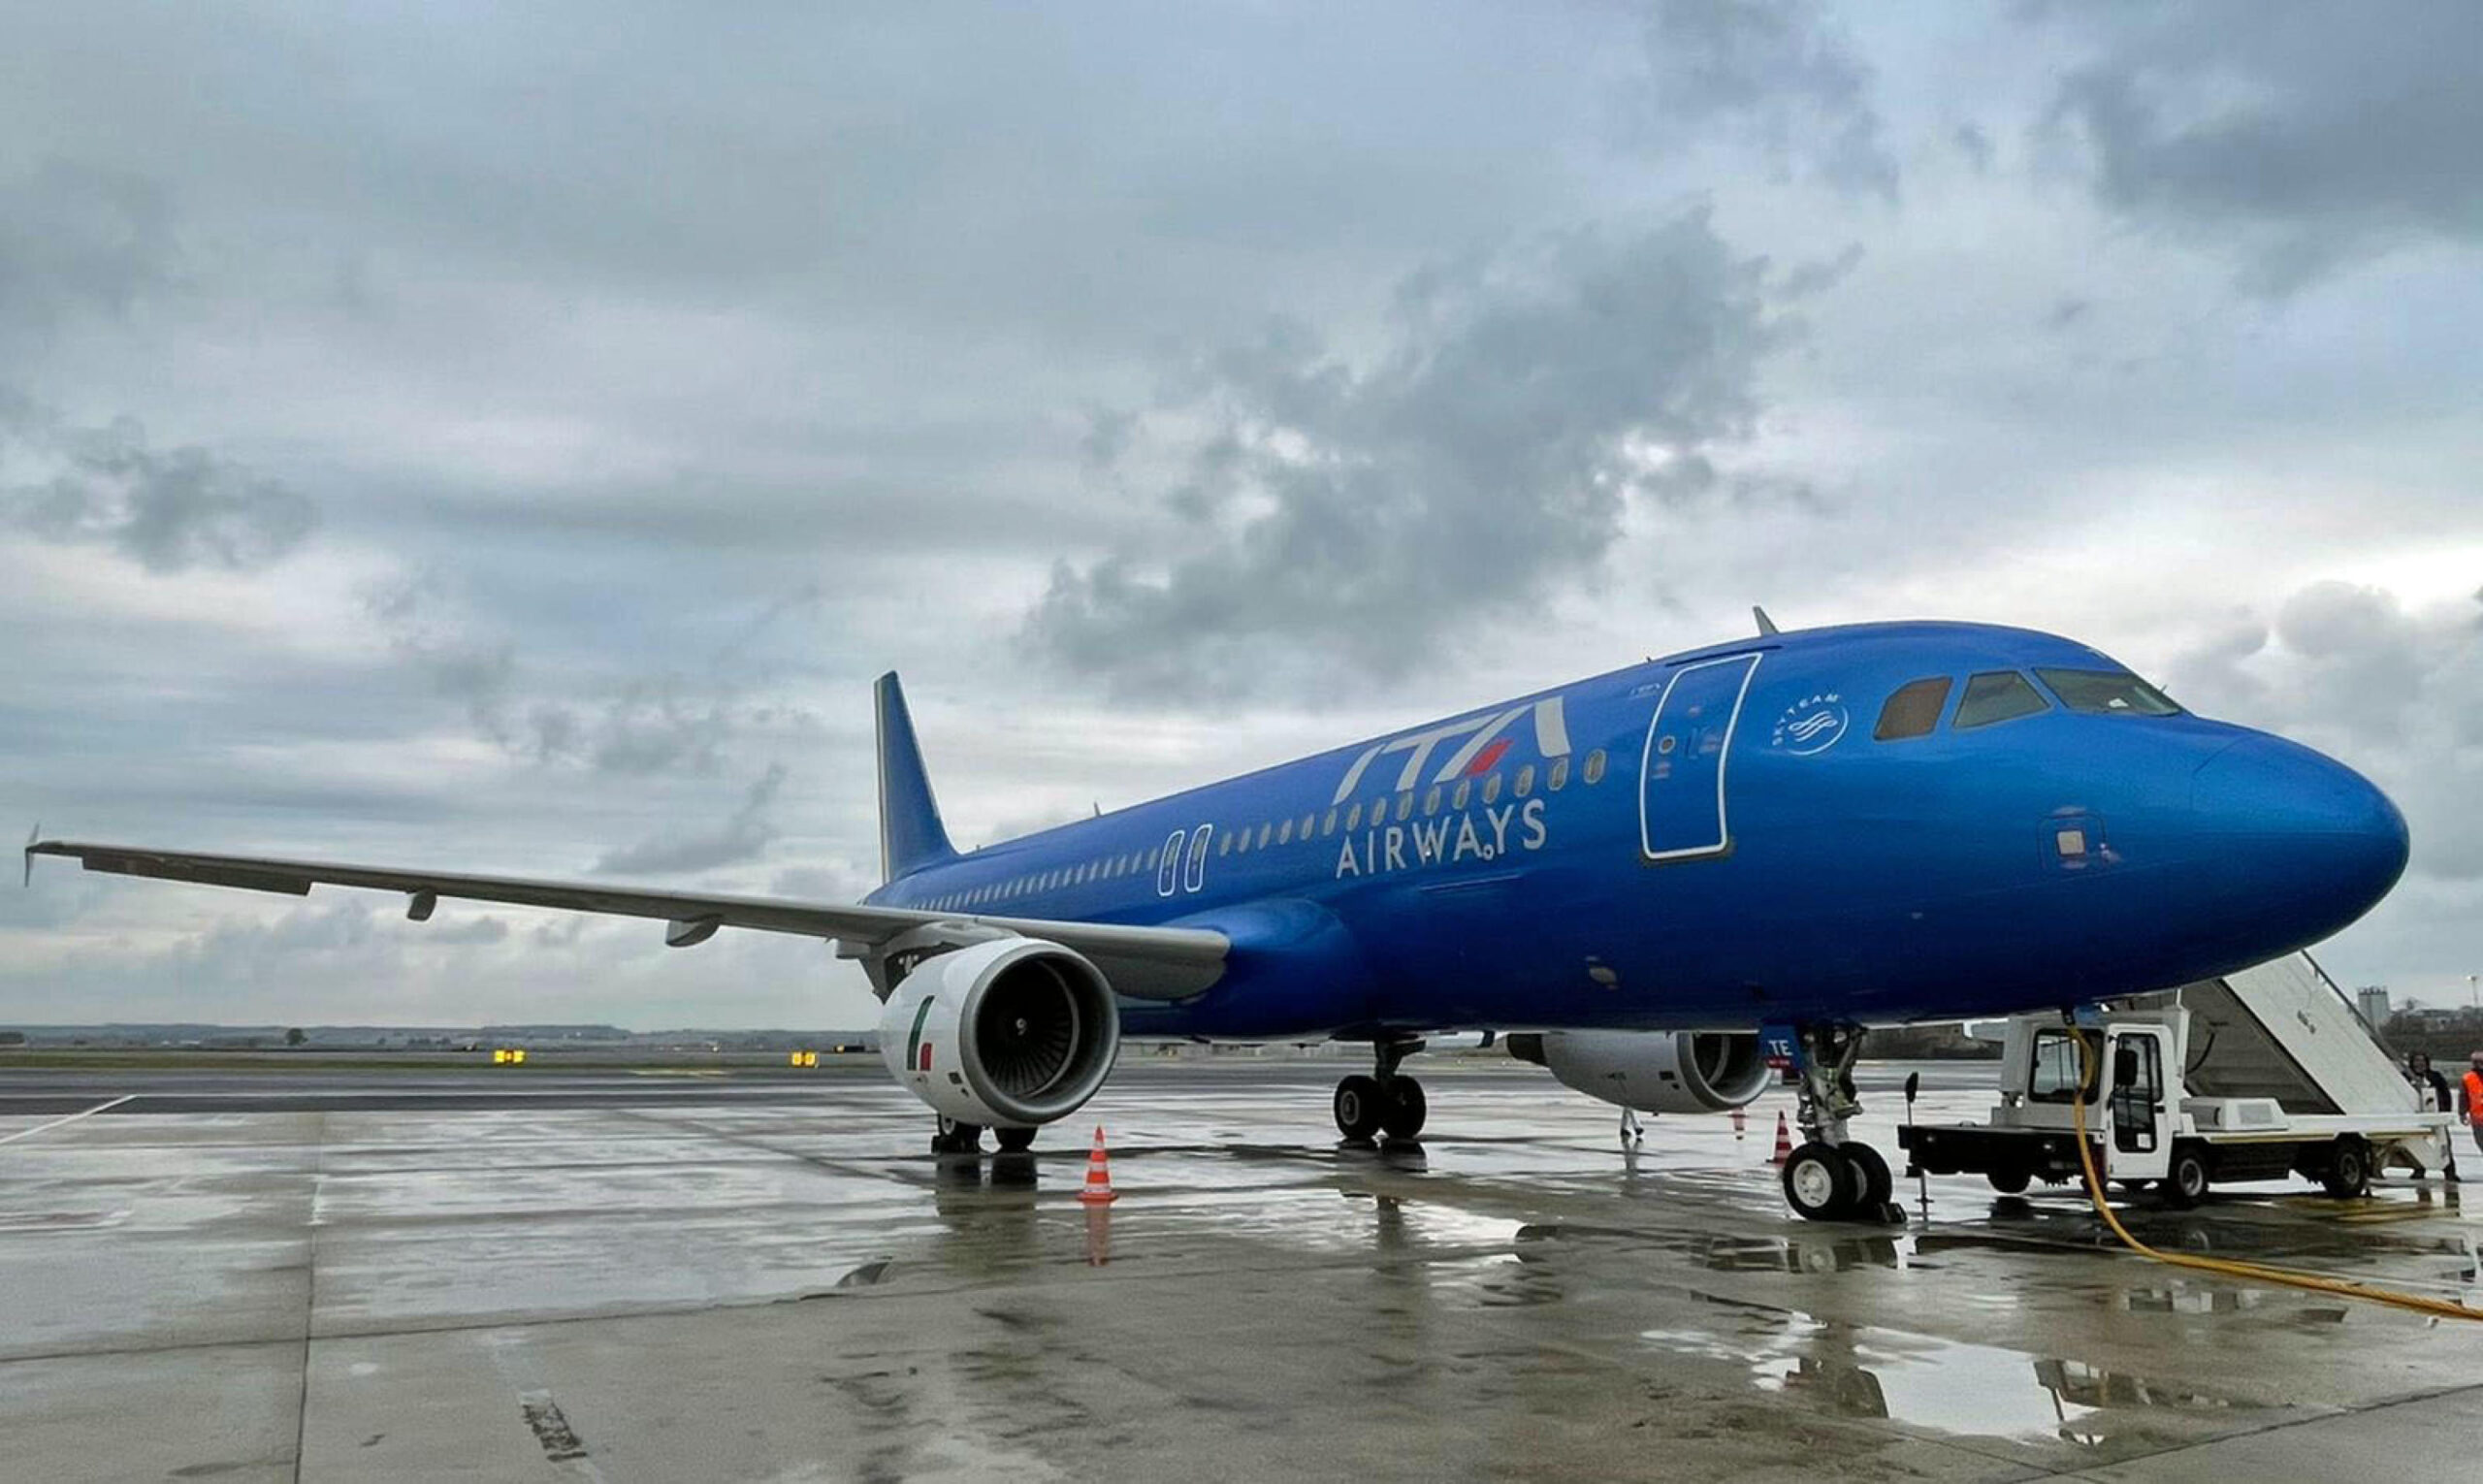 Il primo aereo della compagnia ITA Airways con livrea azzurra sulla tratta Roma-Milano  decolla dall'aeroporto di Roma Leonardo Da Vinci a Fiumicino, 24 dicembra 2021. ANSA/TELENEWS